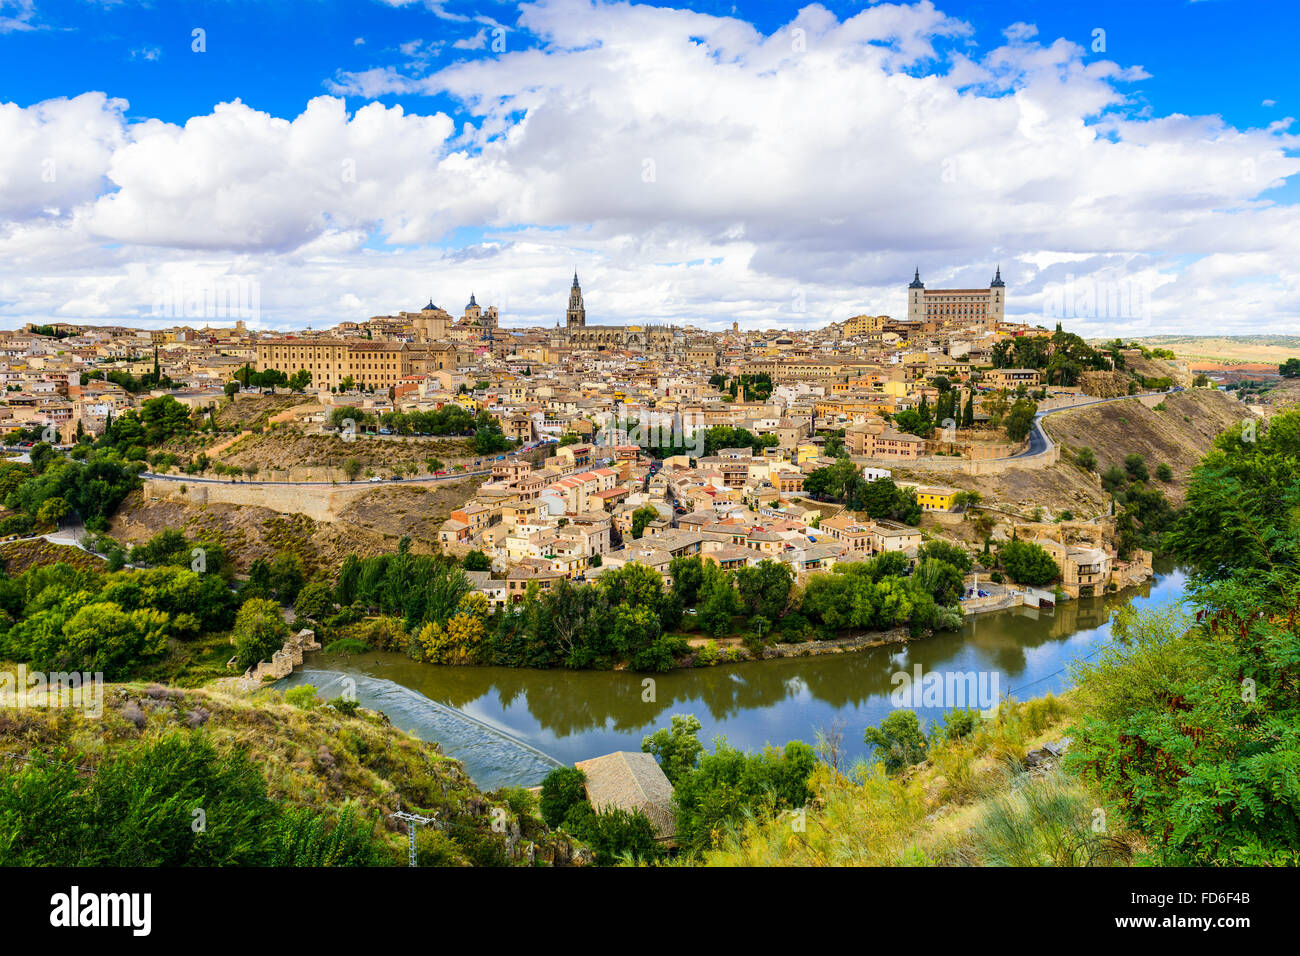 Toledo, Spain old town skyline. Stock Photo